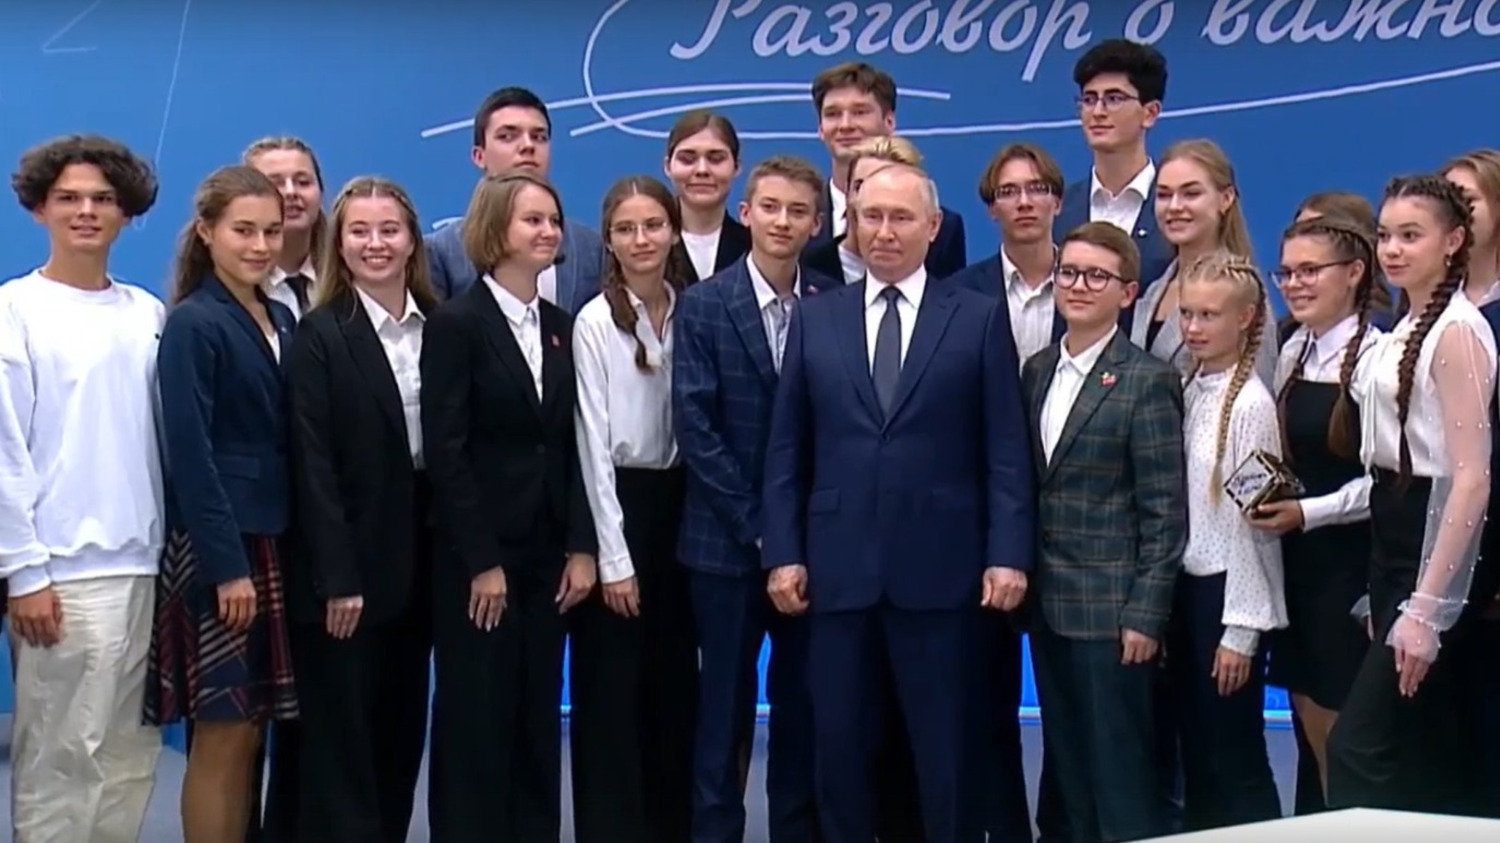 Президент РФ Владимир Путин сделал общее фото с участниками "Разговора о важном"